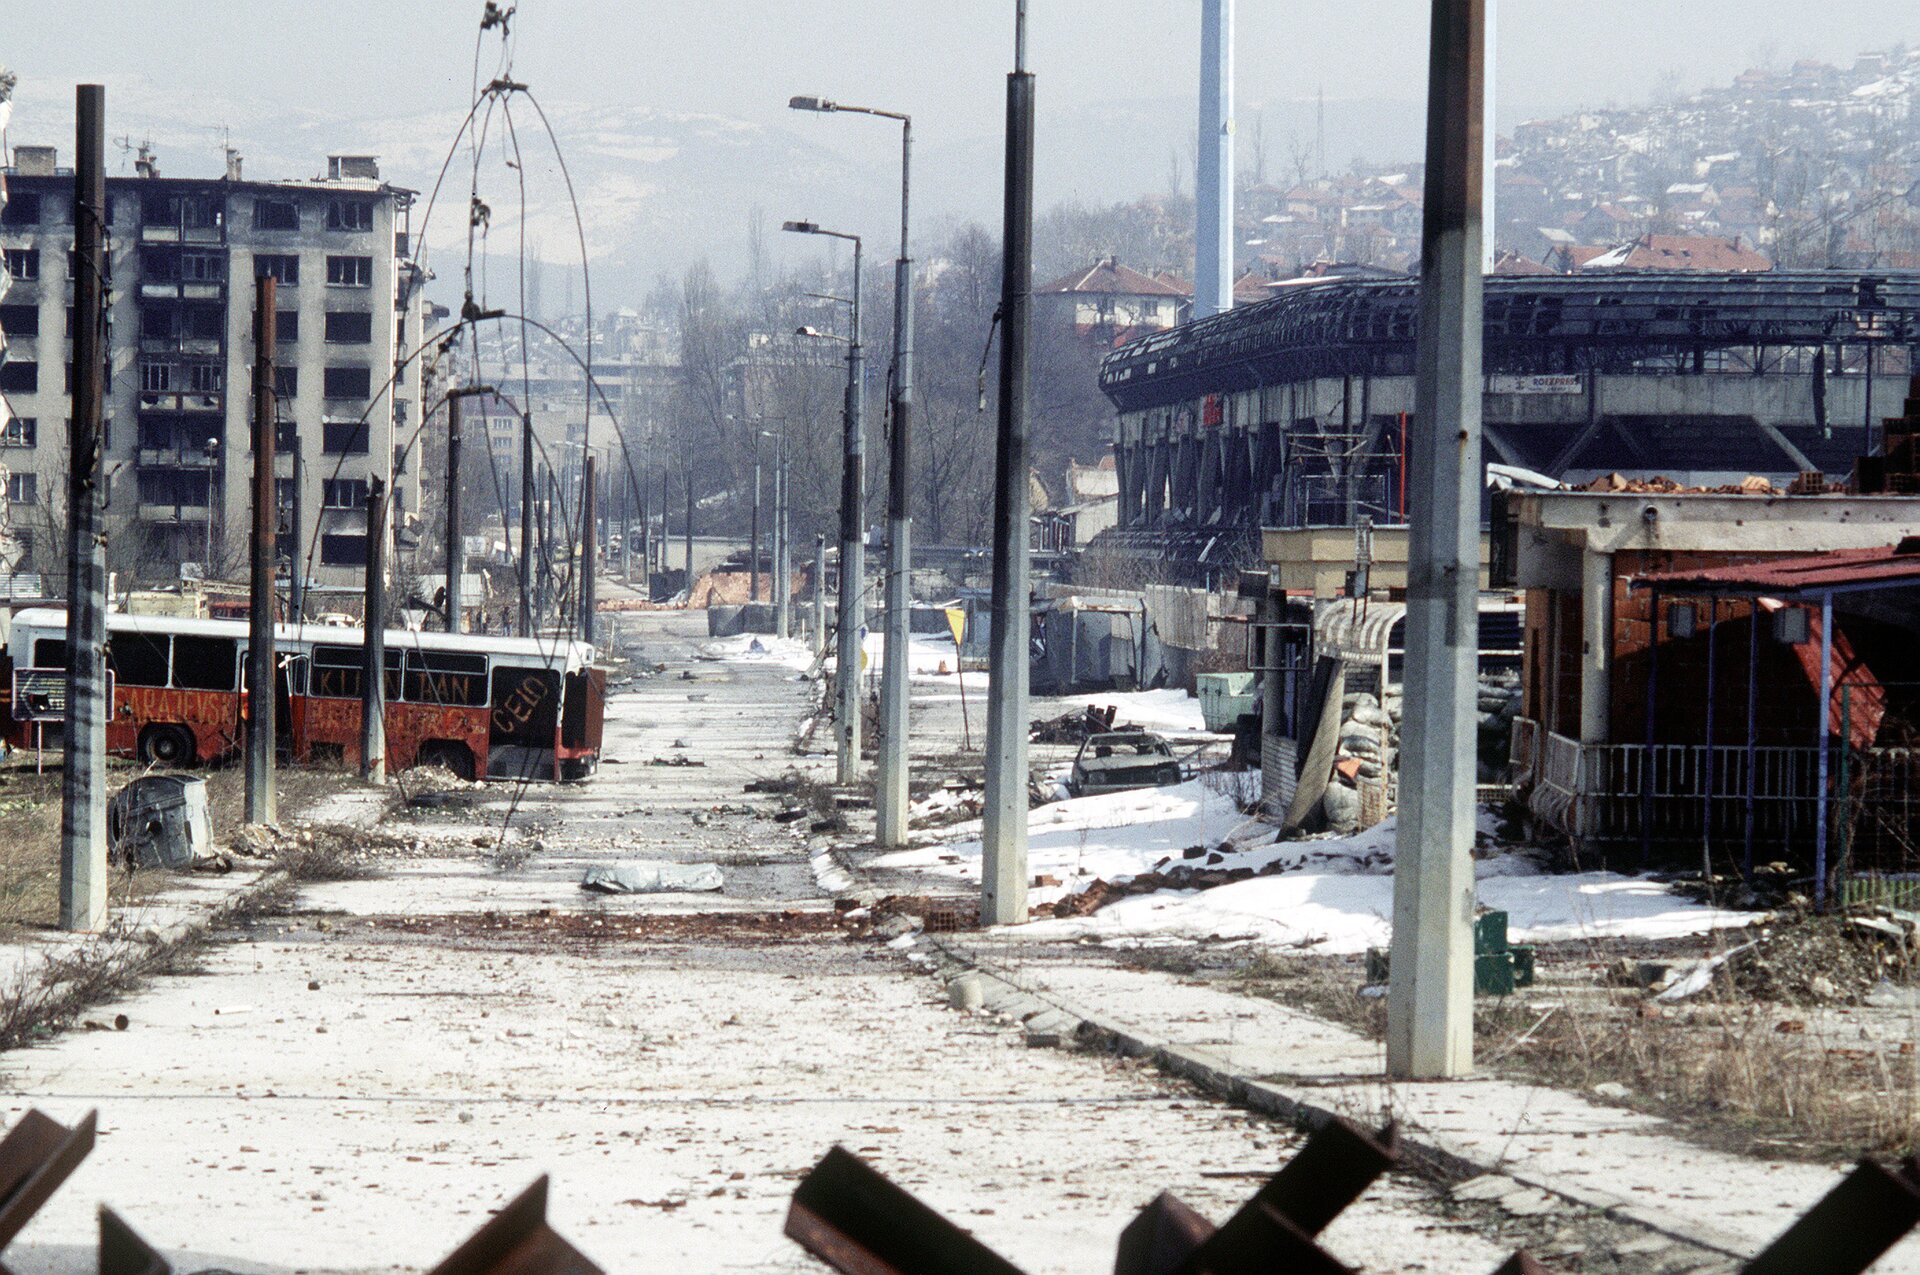 Zdjęcie przedstawia apokaliptyczny widok Sarajewa po wojnie w latach 1992 – 1996. W środku pusta pełna gruzów ulica, po bokach opalone latarnie, zniszczone i spalone szkielety bloków, sklepów, pojazdów. W okolicy nie żadnej osoby. Zdjęcie zrobione zza stalowej barykady.